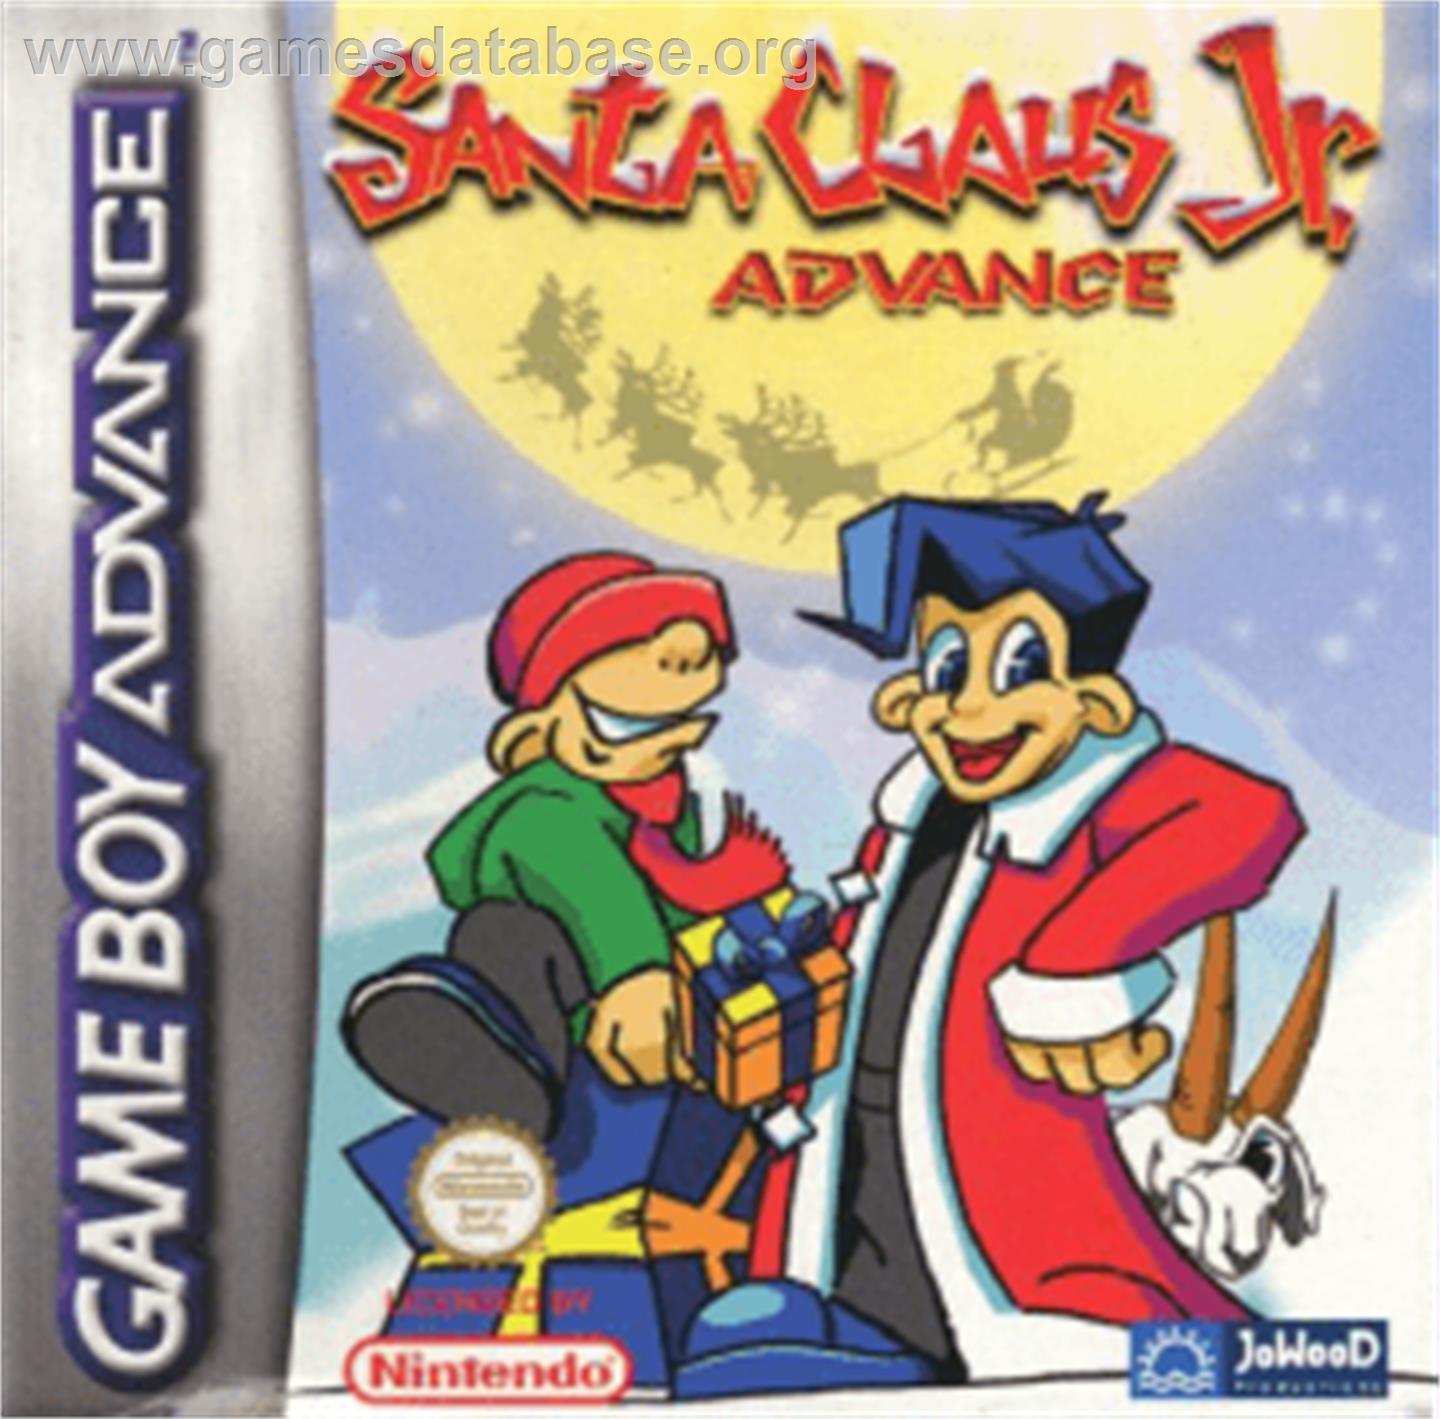 Santa Claus Jr. Advance - Nintendo Game Boy Advance - Artwork - Box